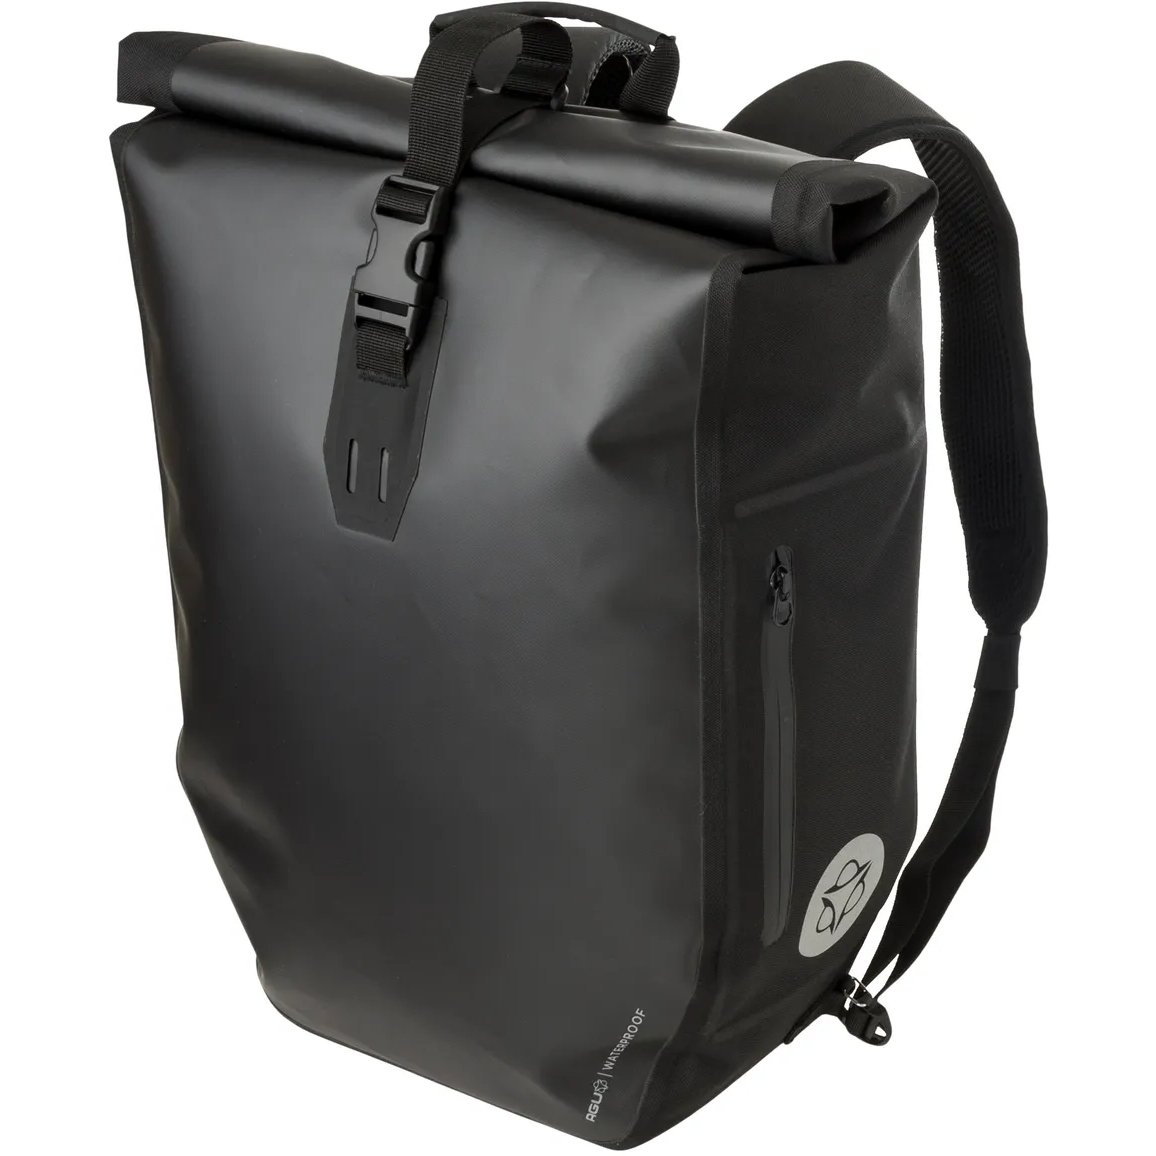 Produktbild von AGU Shelter Clean Einzelne Gepäckträgertasche/Rucksack - Large - 21L - schwarz